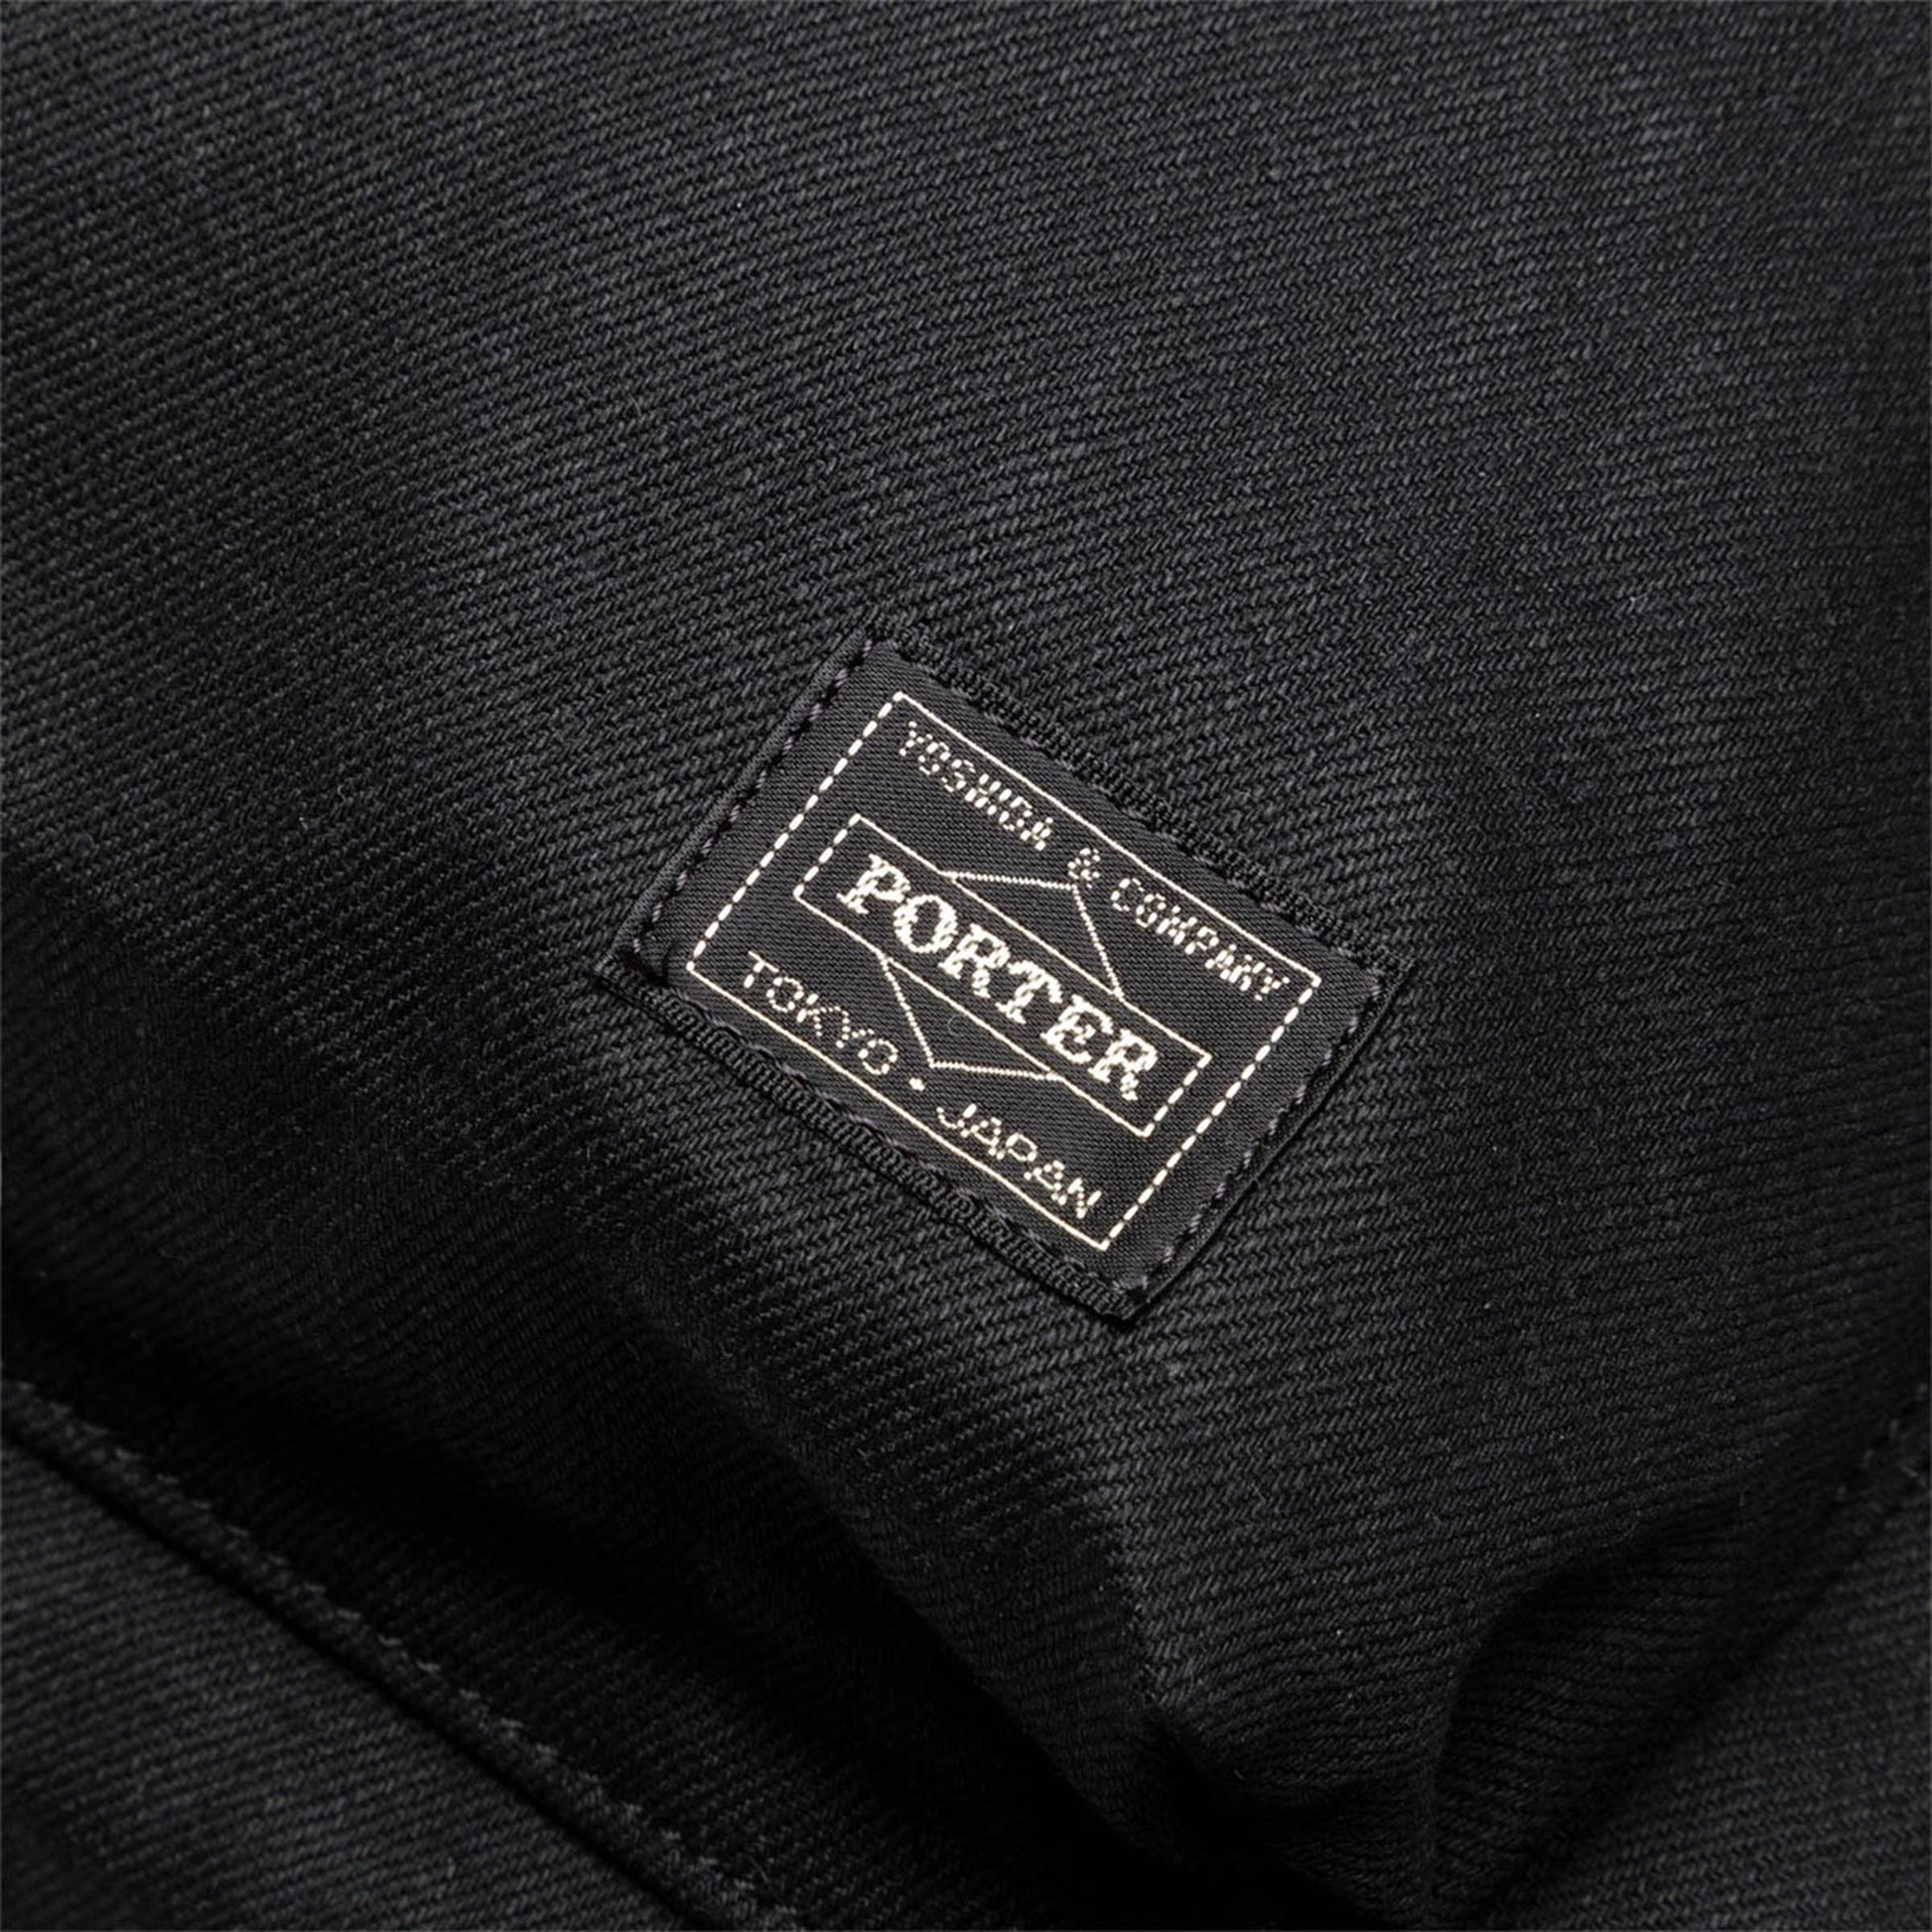 Porter Yoshida Bags BLACK / O/S NOIR DAY PACK